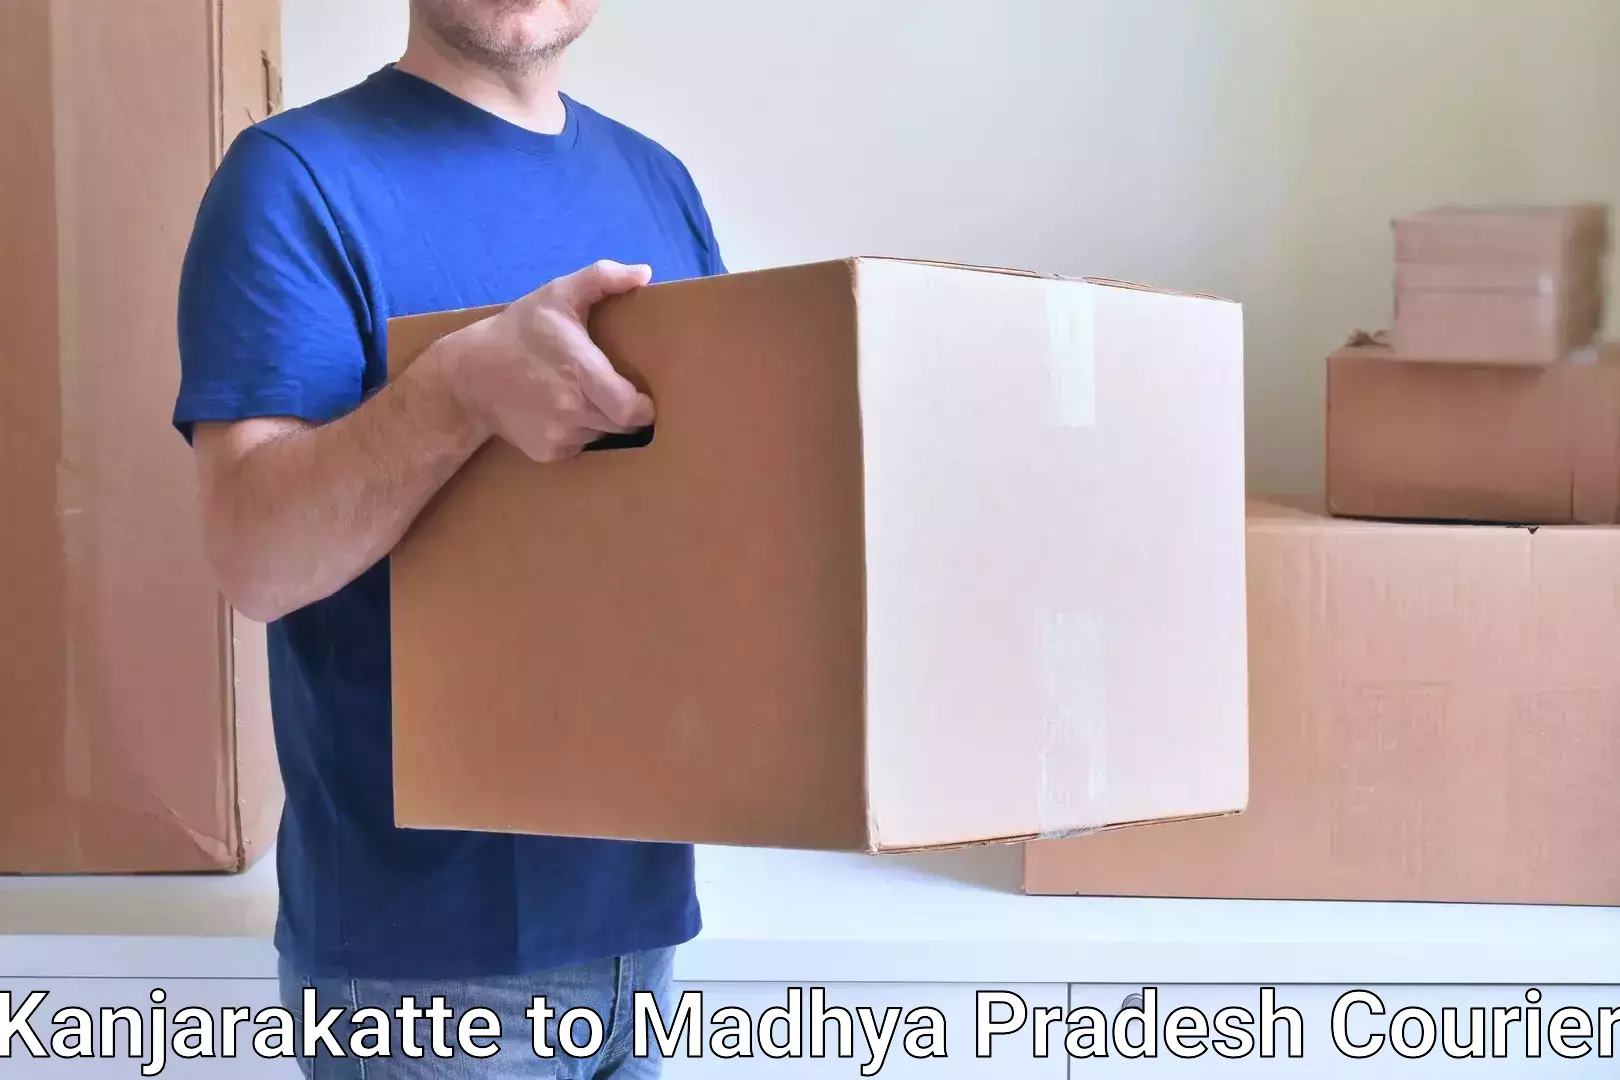 Customized shipping options Kanjarakatte to Vidisha